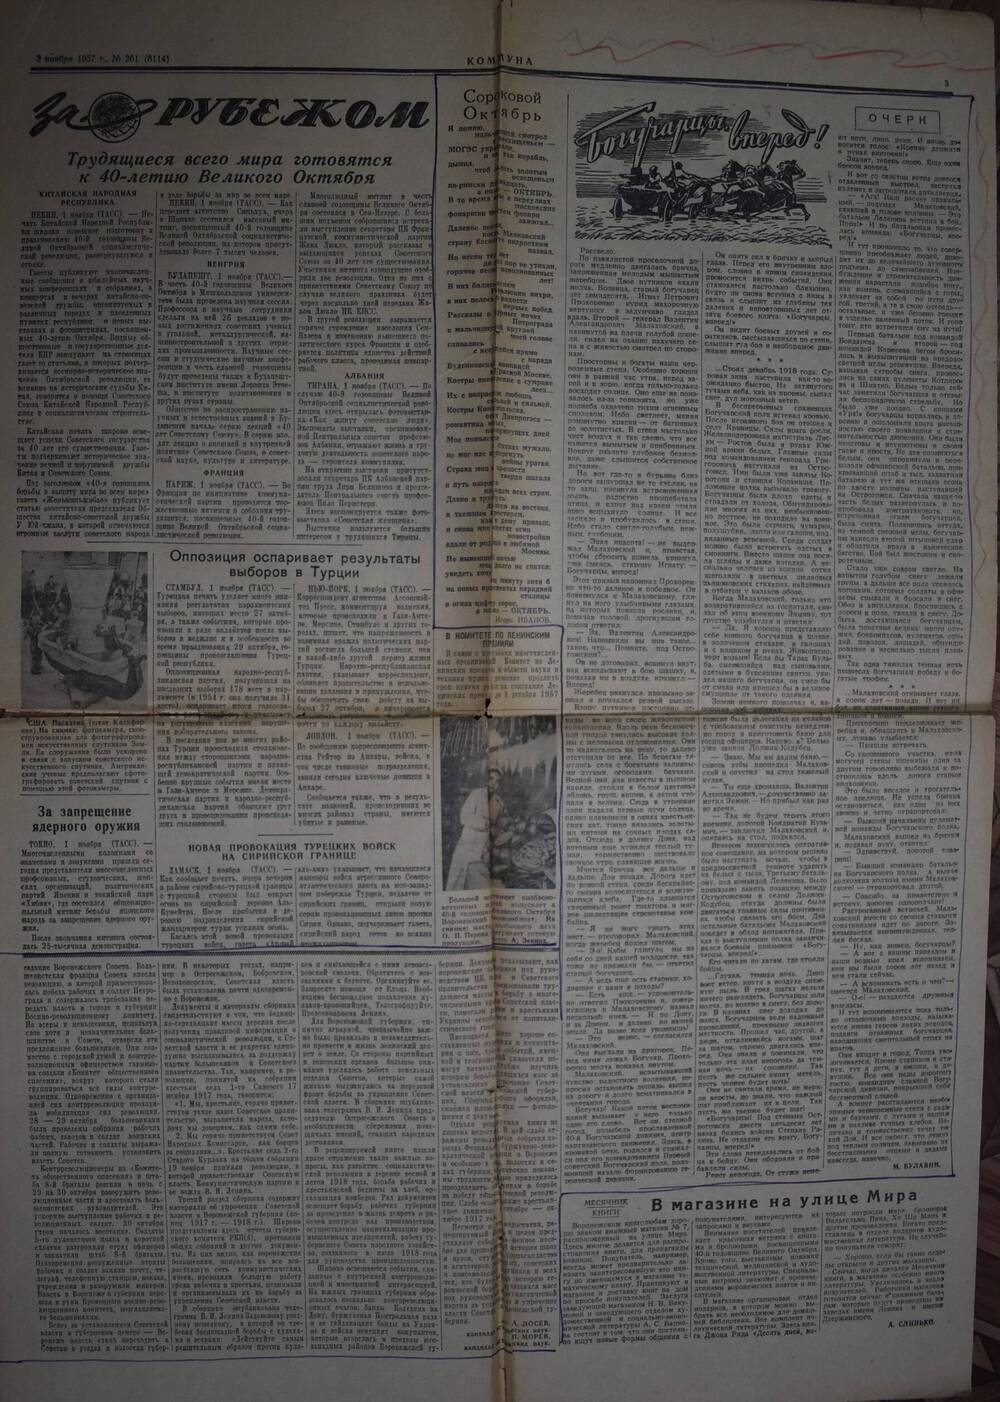 Часть газеты Коммуна  от 03.11.1957 г.